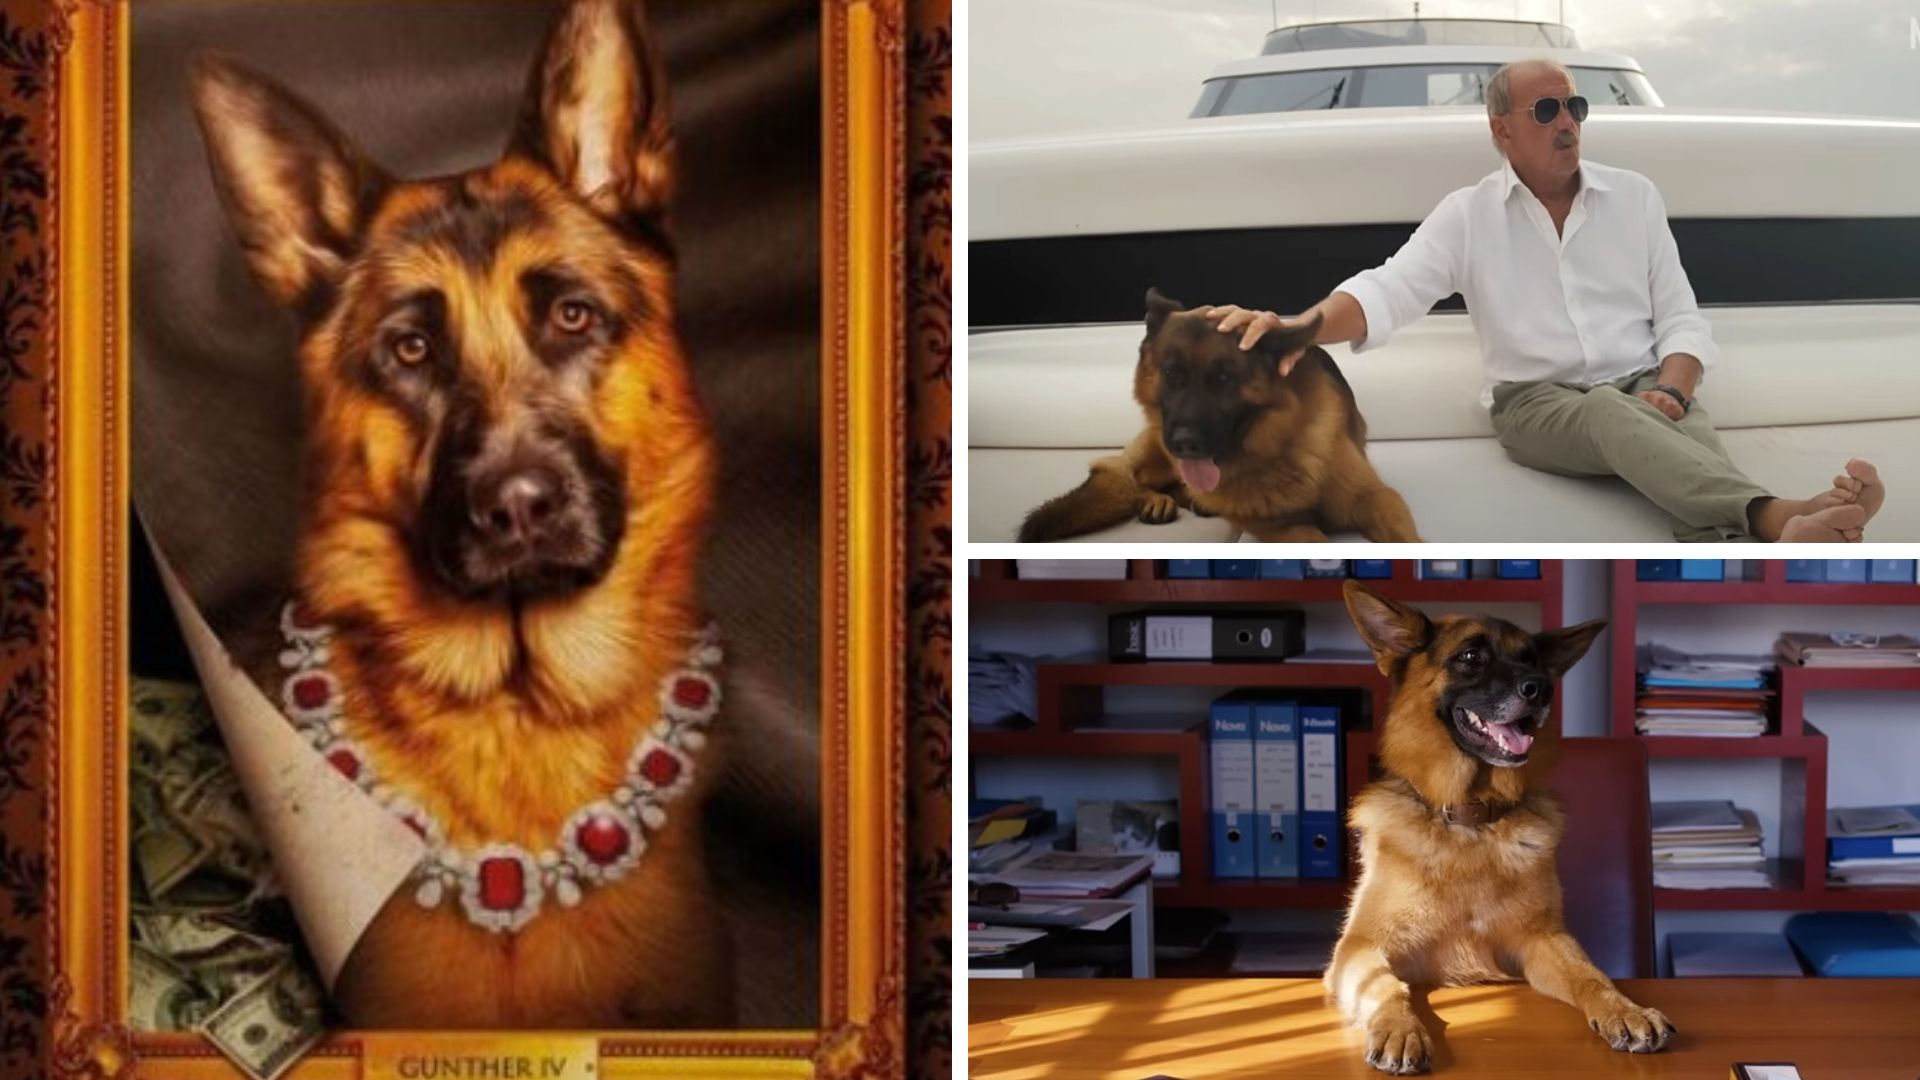 Maurizio Mian y su famoso perro en "Guther, el perro millonario". (Netflix)